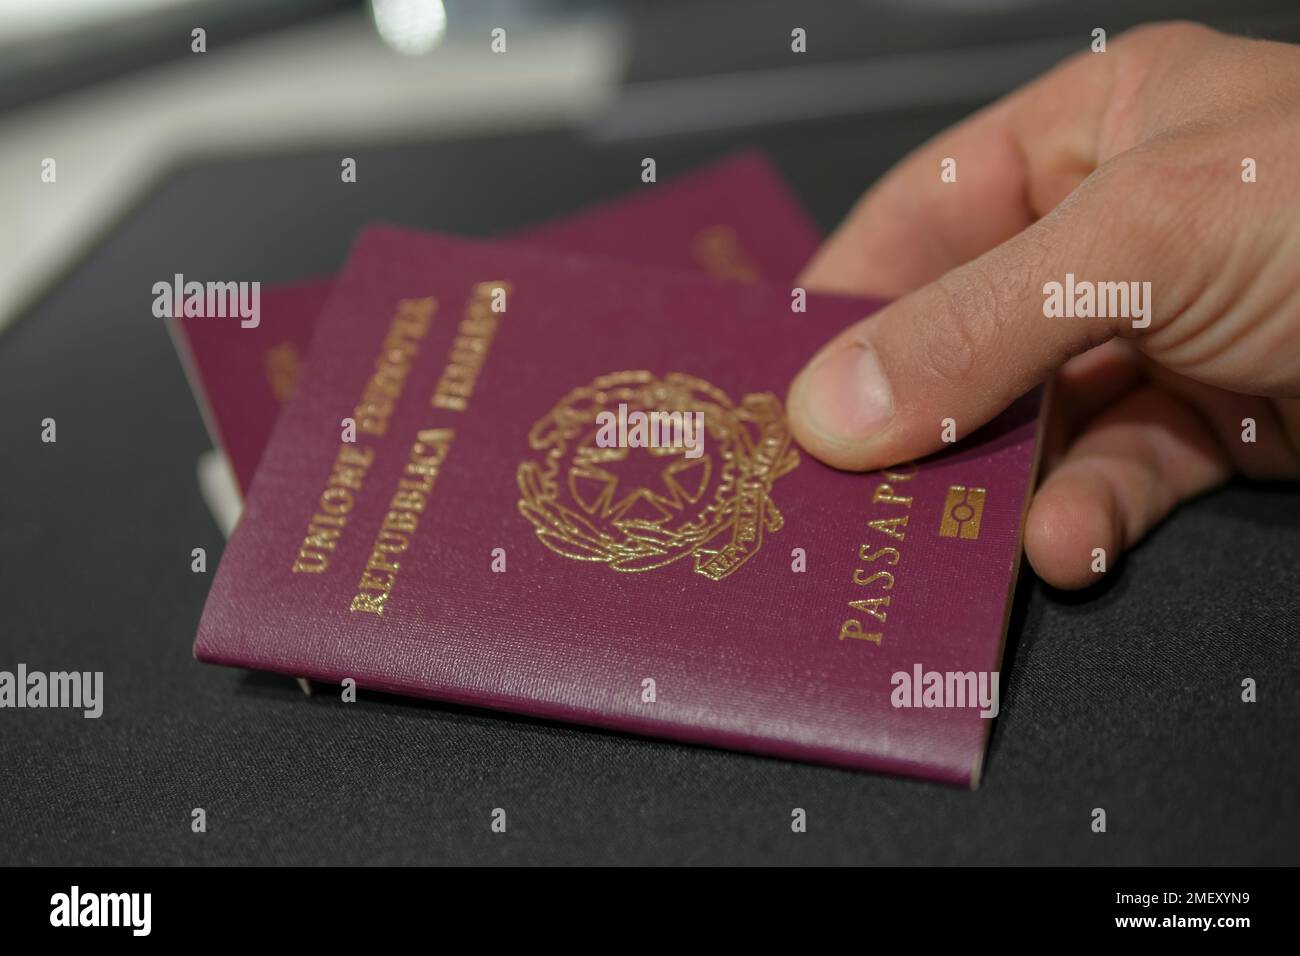 Roter biometrischer Europäischer Pass für die italienische Staatsbürgerschaft, personalausweis zur Identifizierung von Reisedokumenten Stockfoto